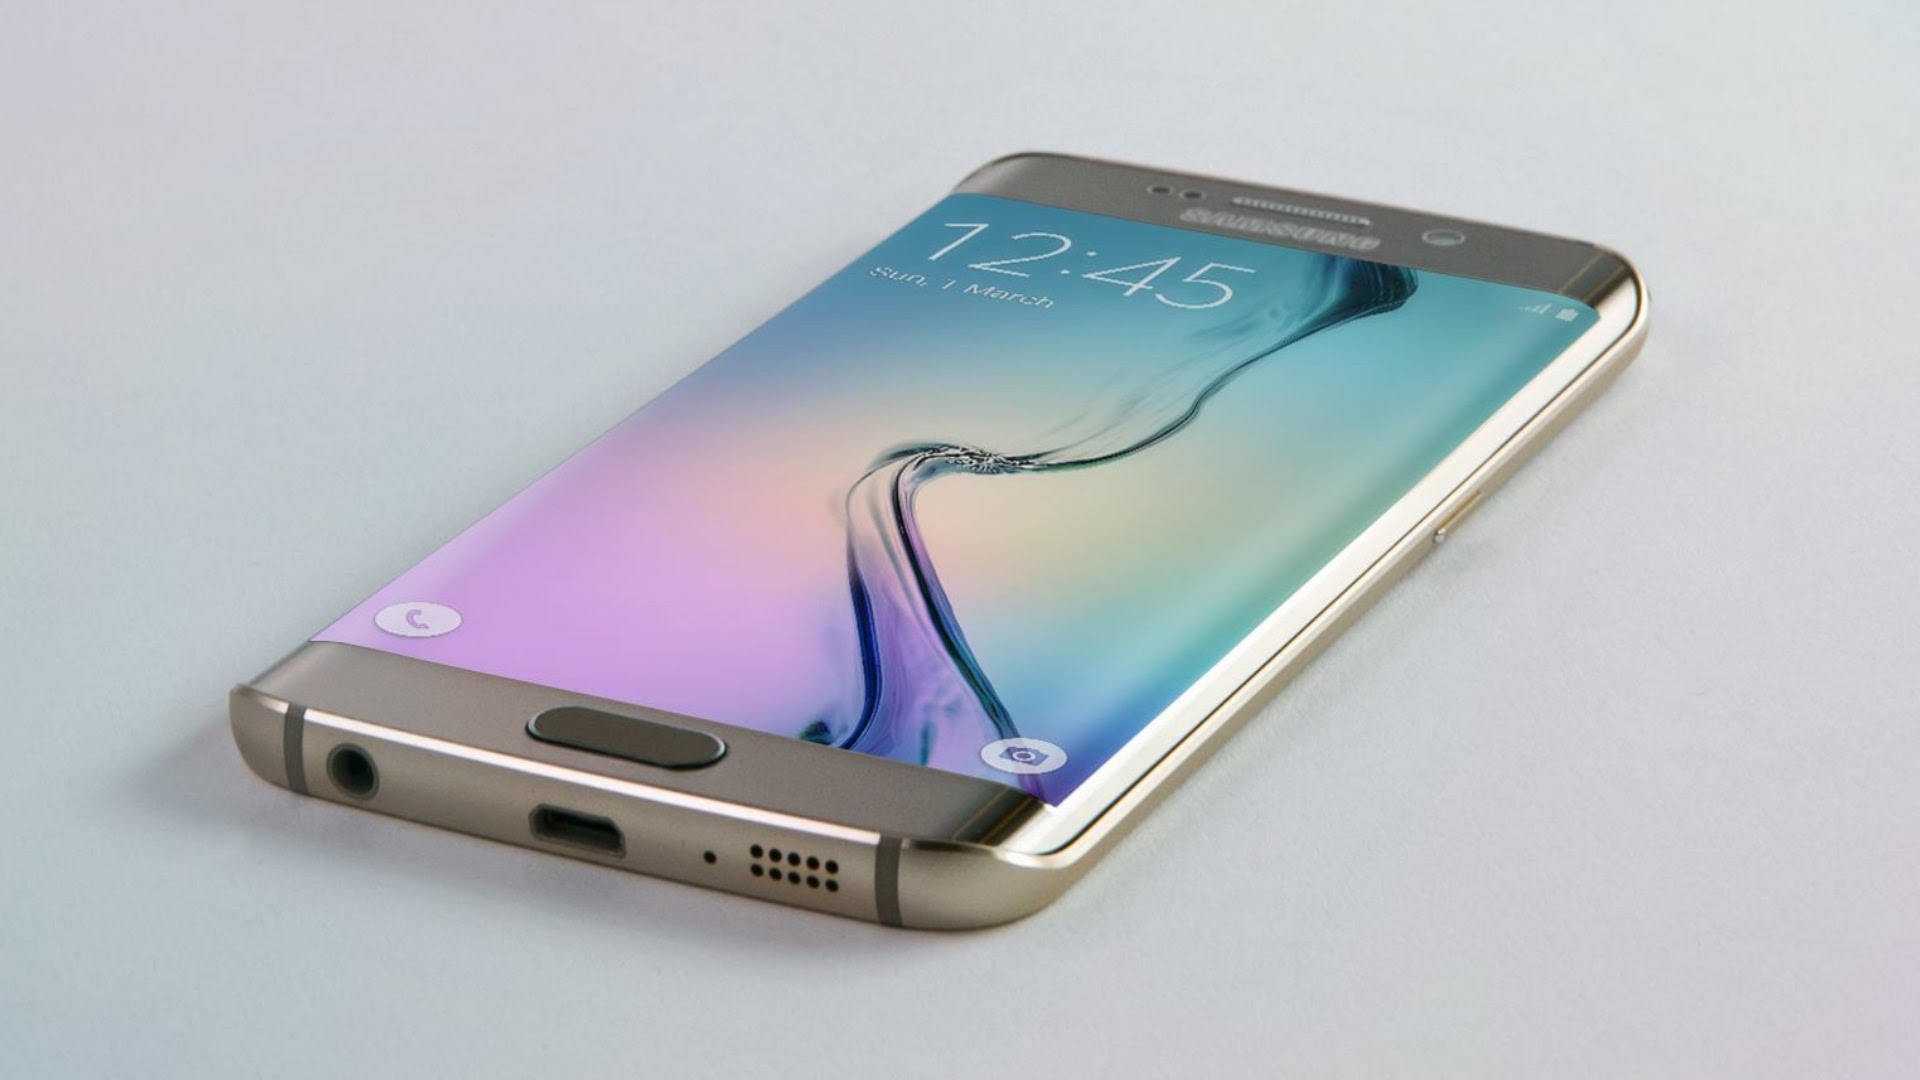 ТОП 12 смартфонов с возможностью видеозаписи в формате 4K - Samsung Galaxy S6 Edge Plus